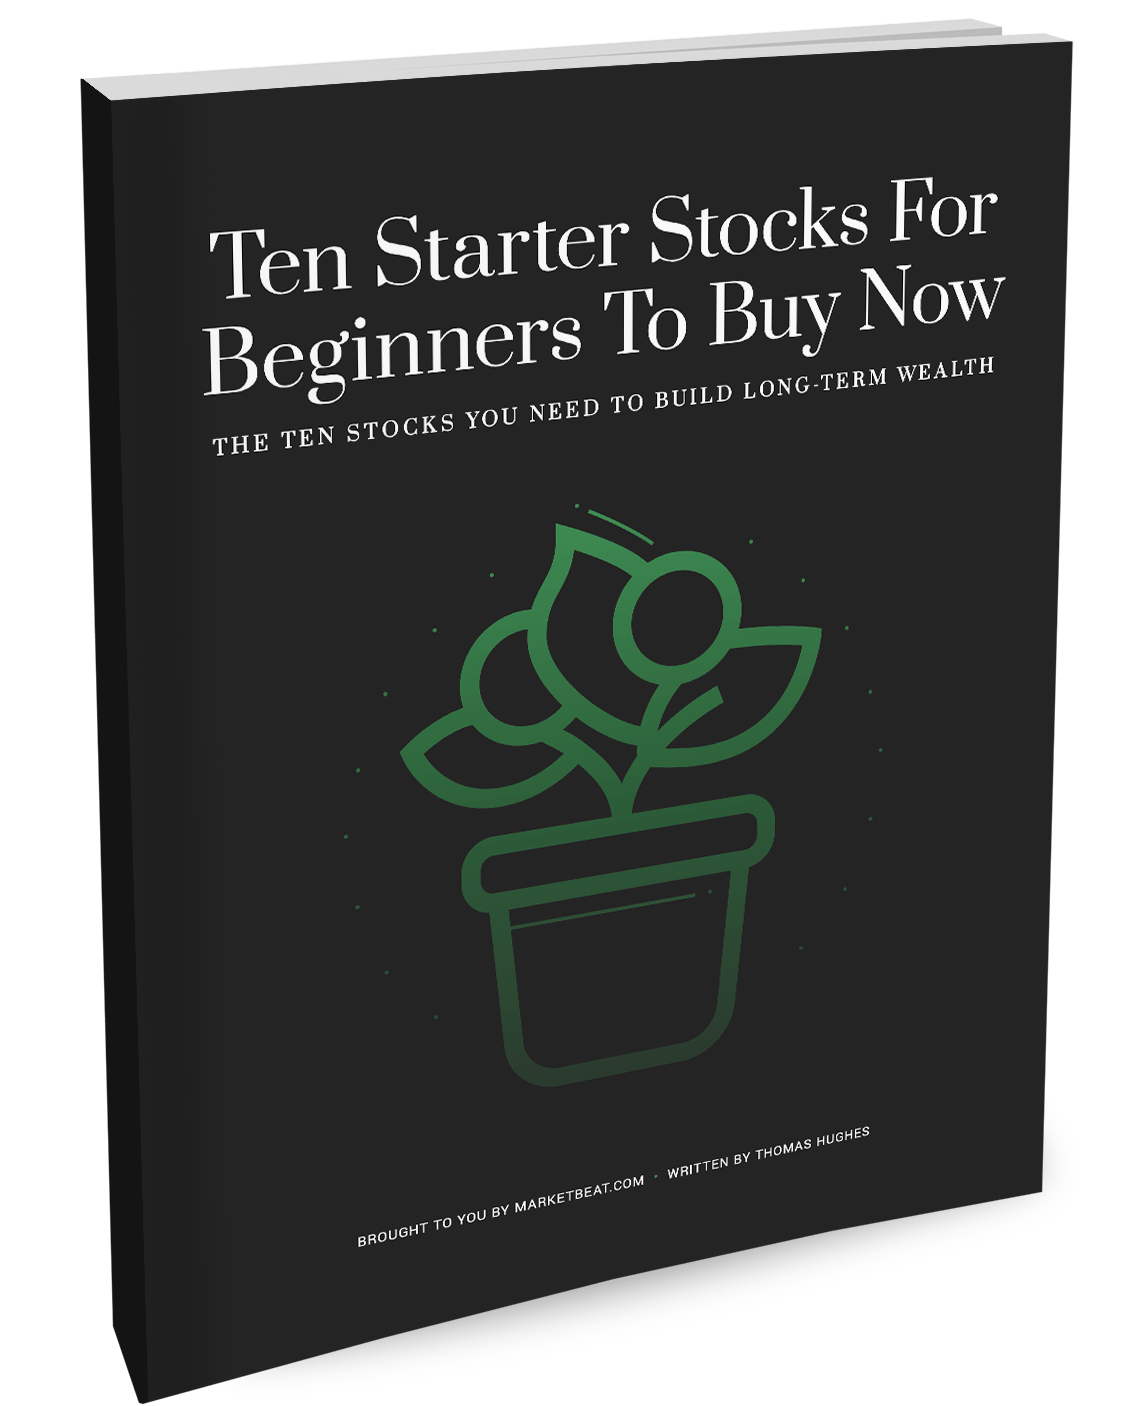 Ten starter stocks for beginners to buy now